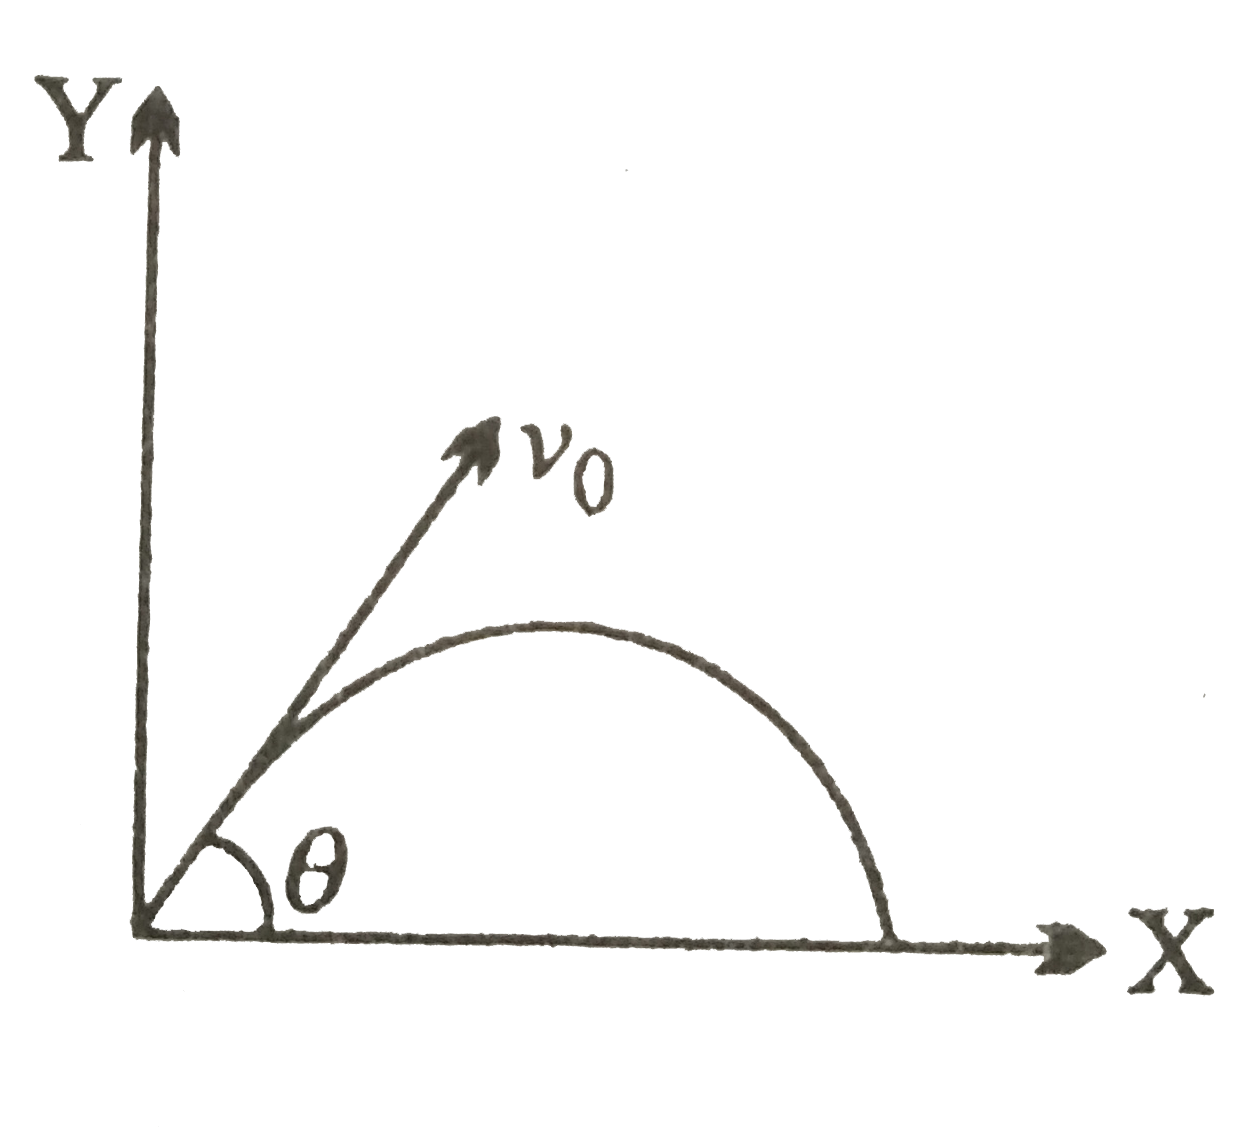 X - अक्ष से theta कोण पर द्रव्यमान m के एक छोटे कण को एक प्रारंभिक वेग v(0) से XY - तल में प्रक्षेपित किया जाता है जैसा कि चित्र में दर्शाया गया  है । समय t lt (v(0) sin theta)/(g) के लिए कण का कोणीय संवेग होगा -   जहाँ hati, hatj  और hatk  क्रमश : X-अक्ष, Y-अक्ष और Z-अक्ष के अनुदिश  एकांक सदिश हैं -